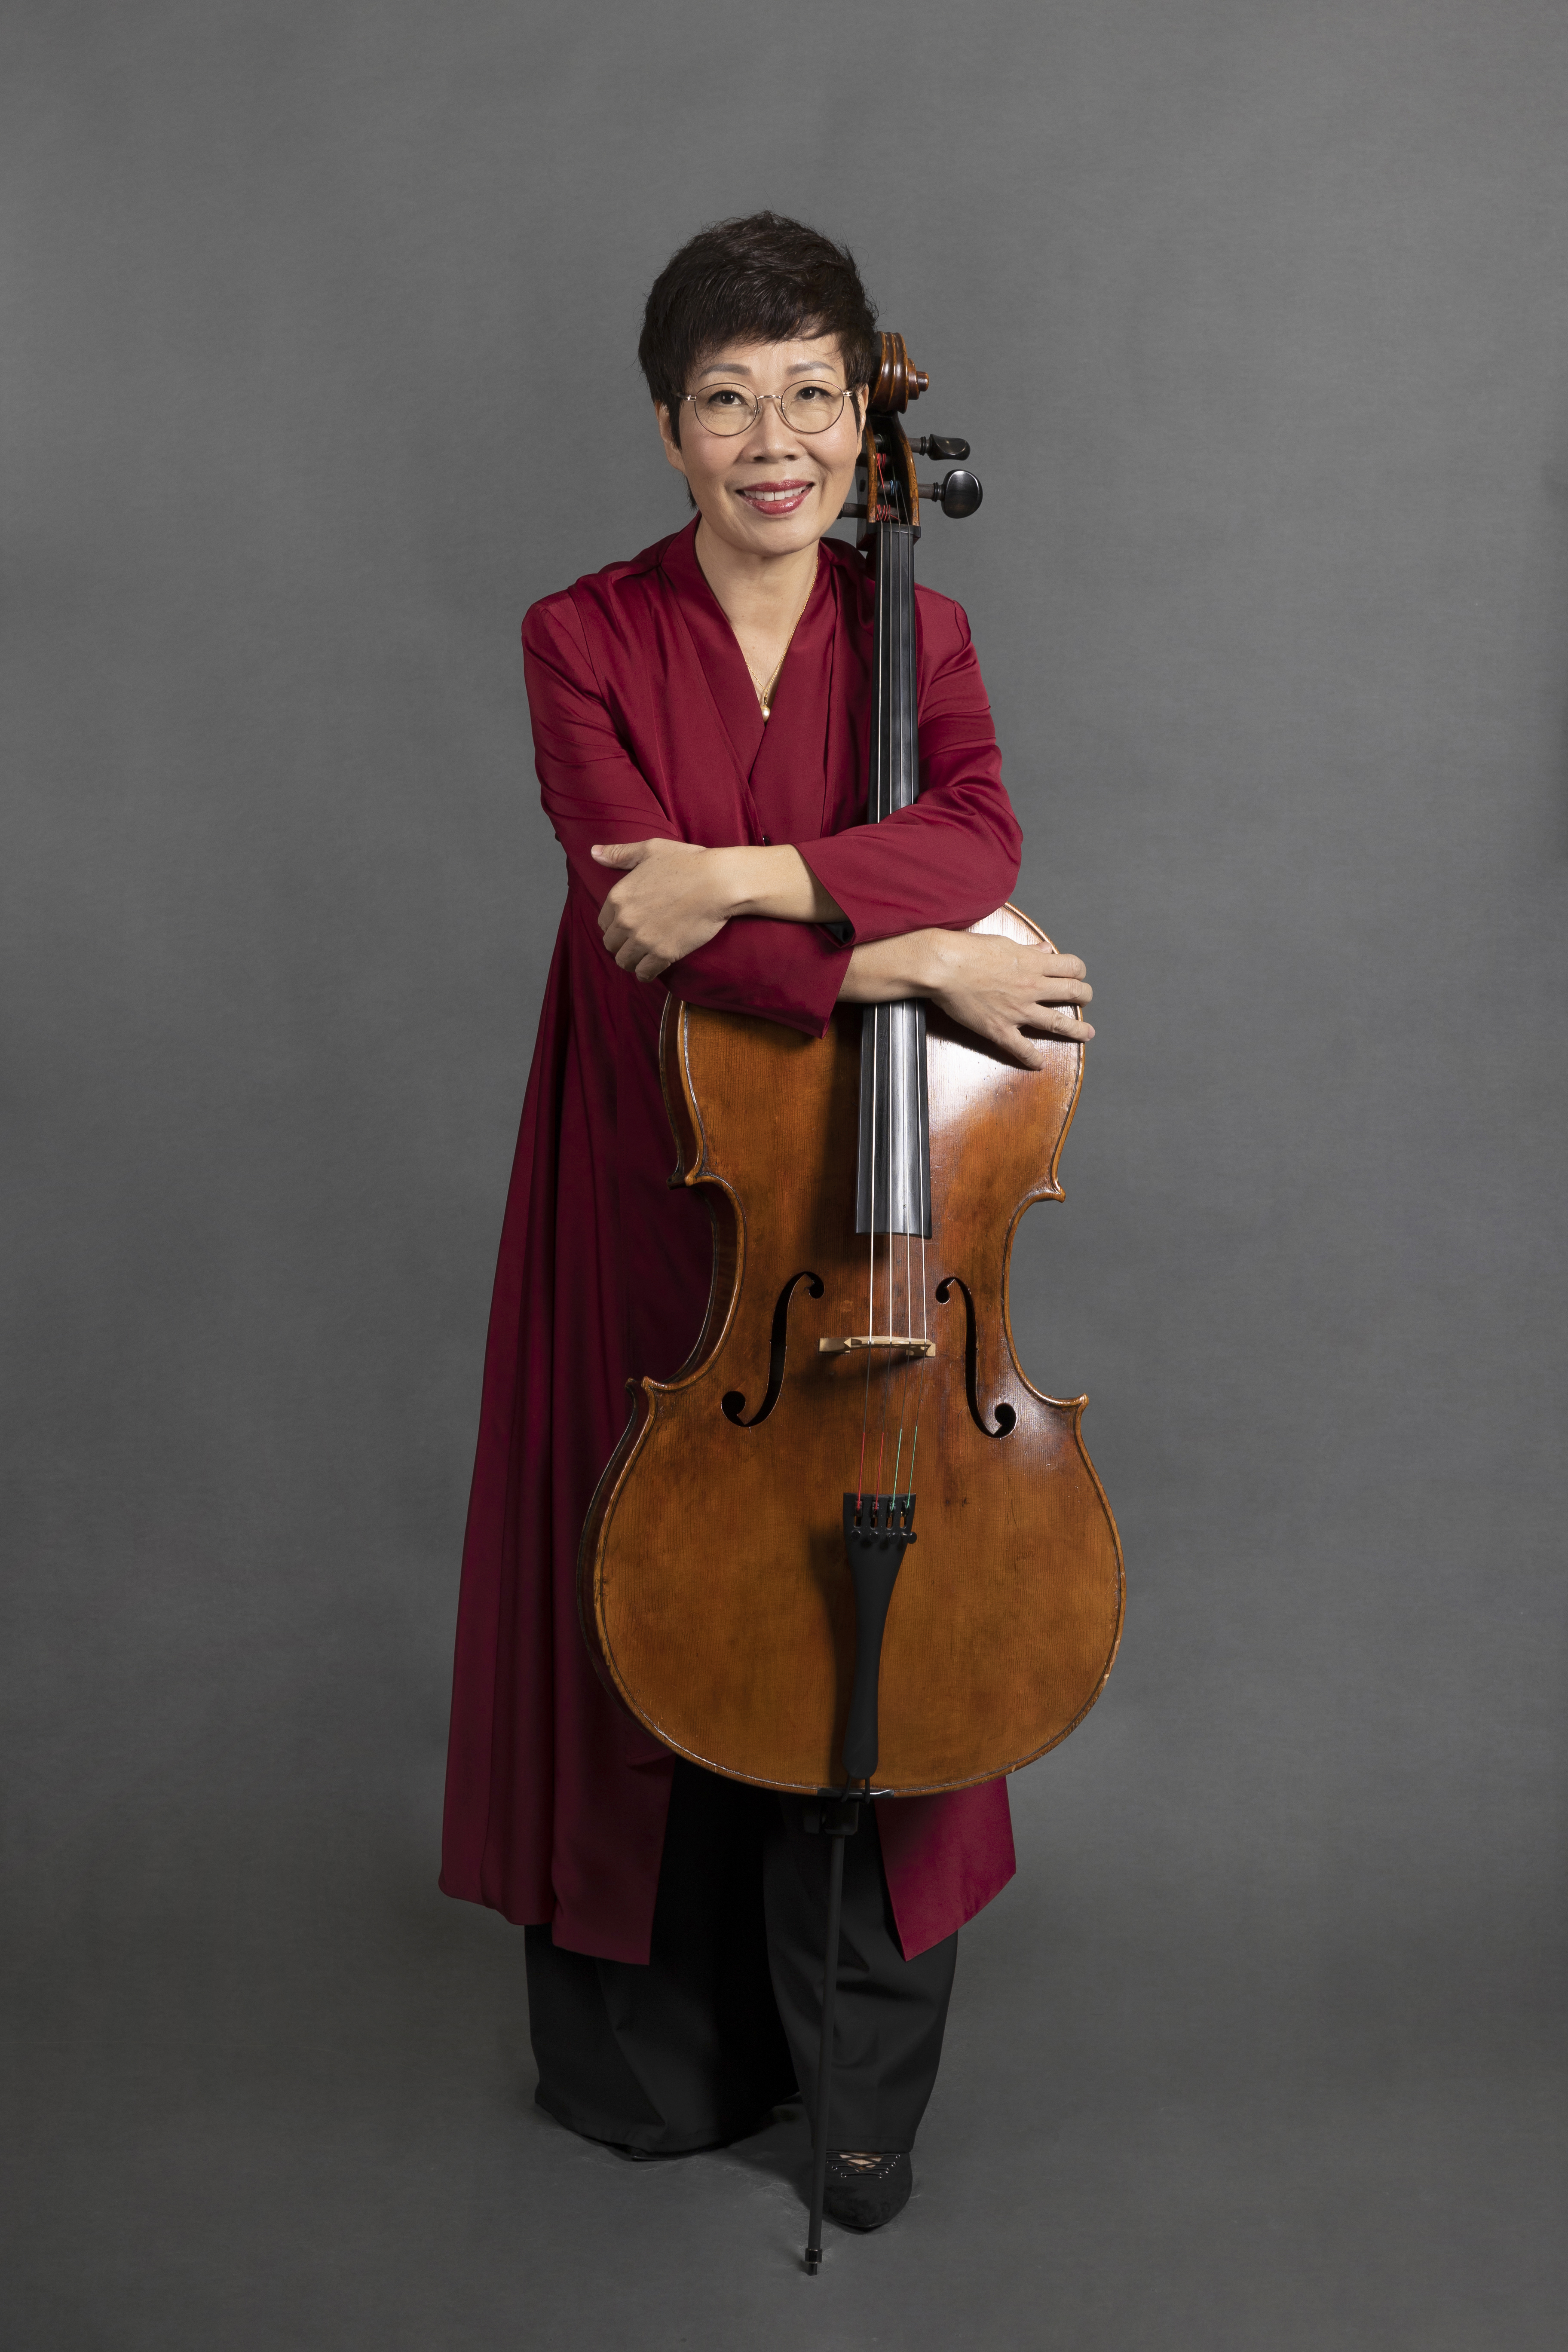 Helen Cello